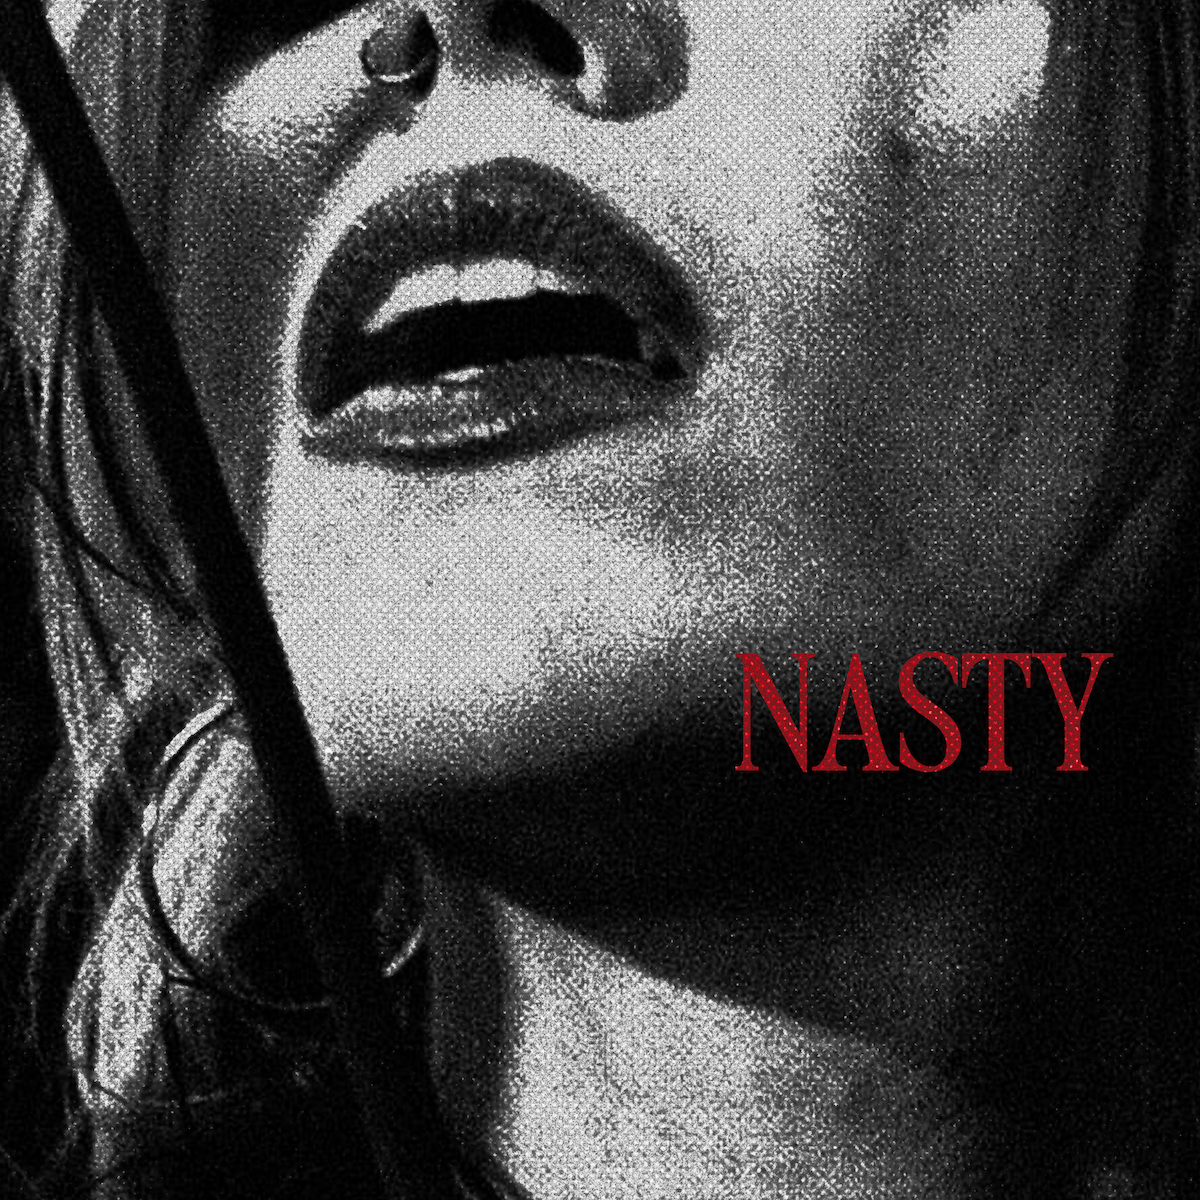 LISTEN: “Nasty” by Dela Kay